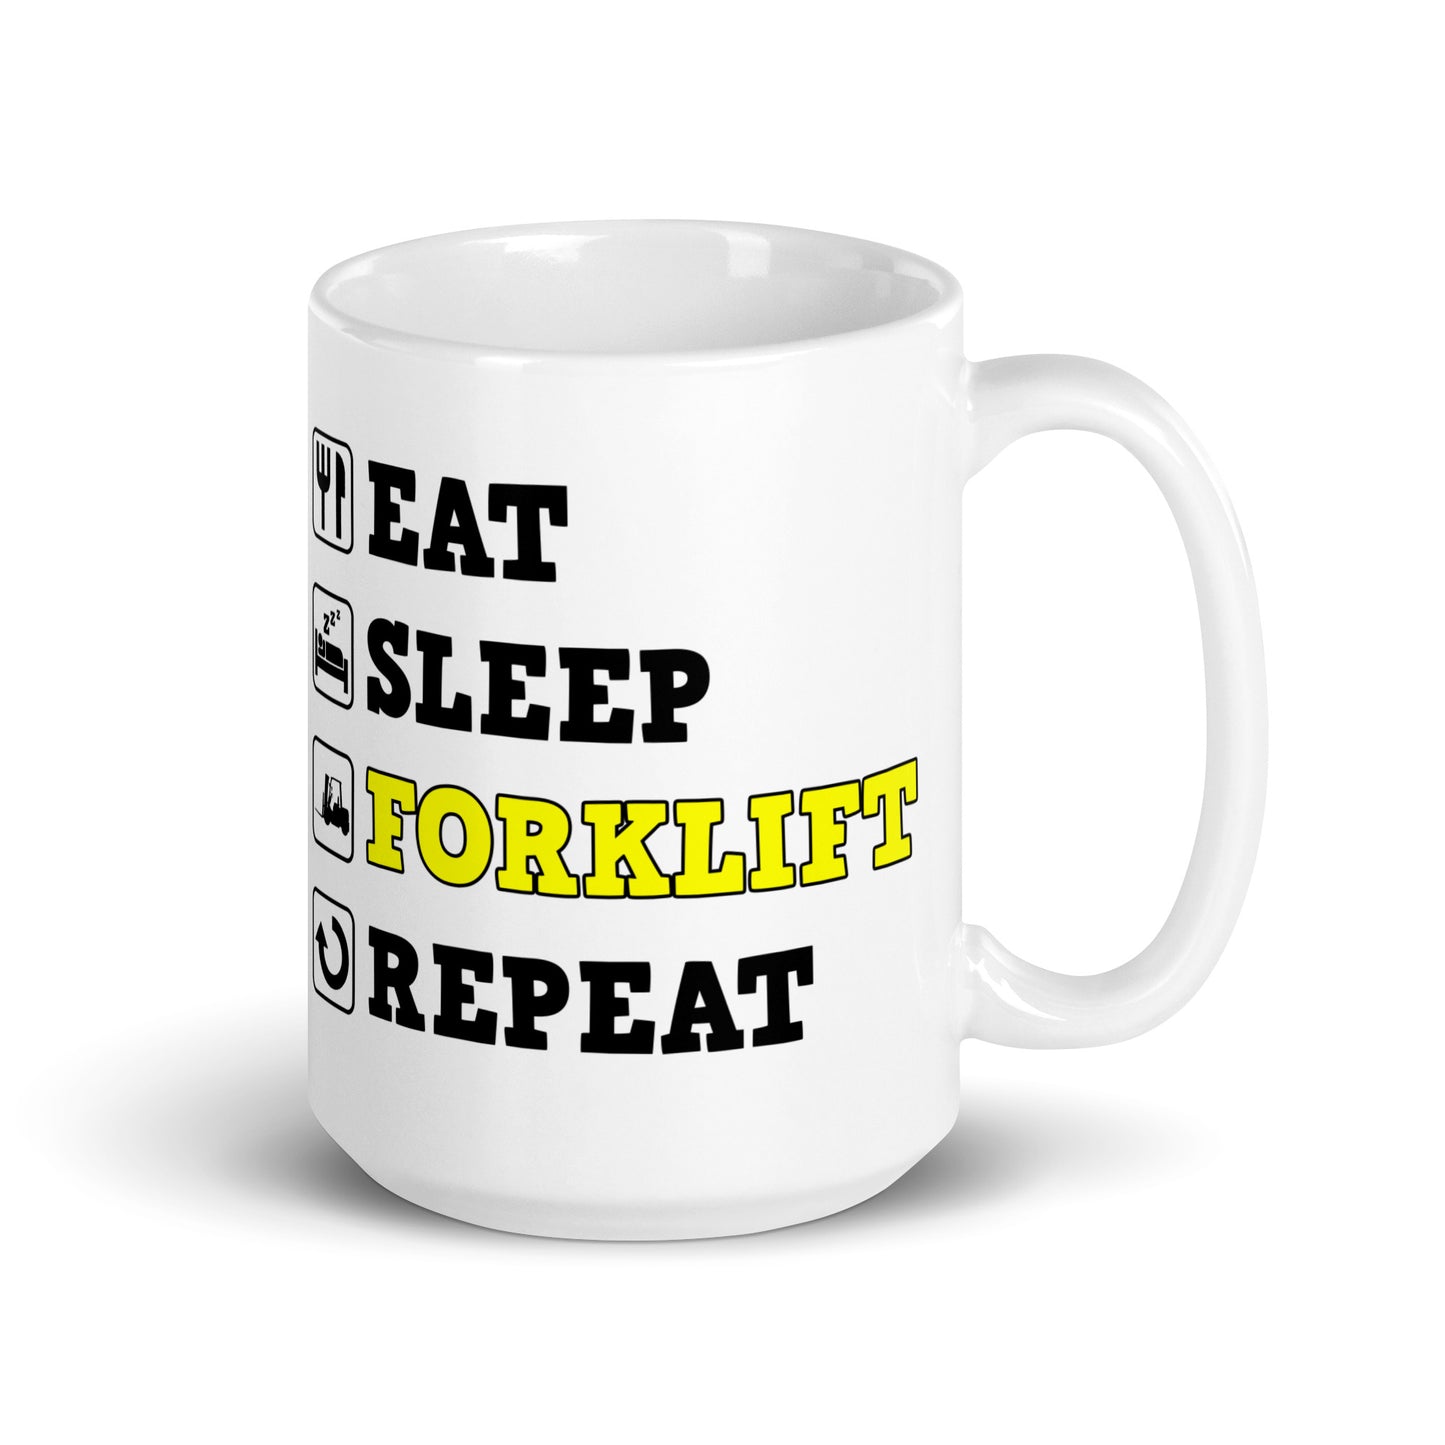 Eat Sleep Forklift Repeat Mug